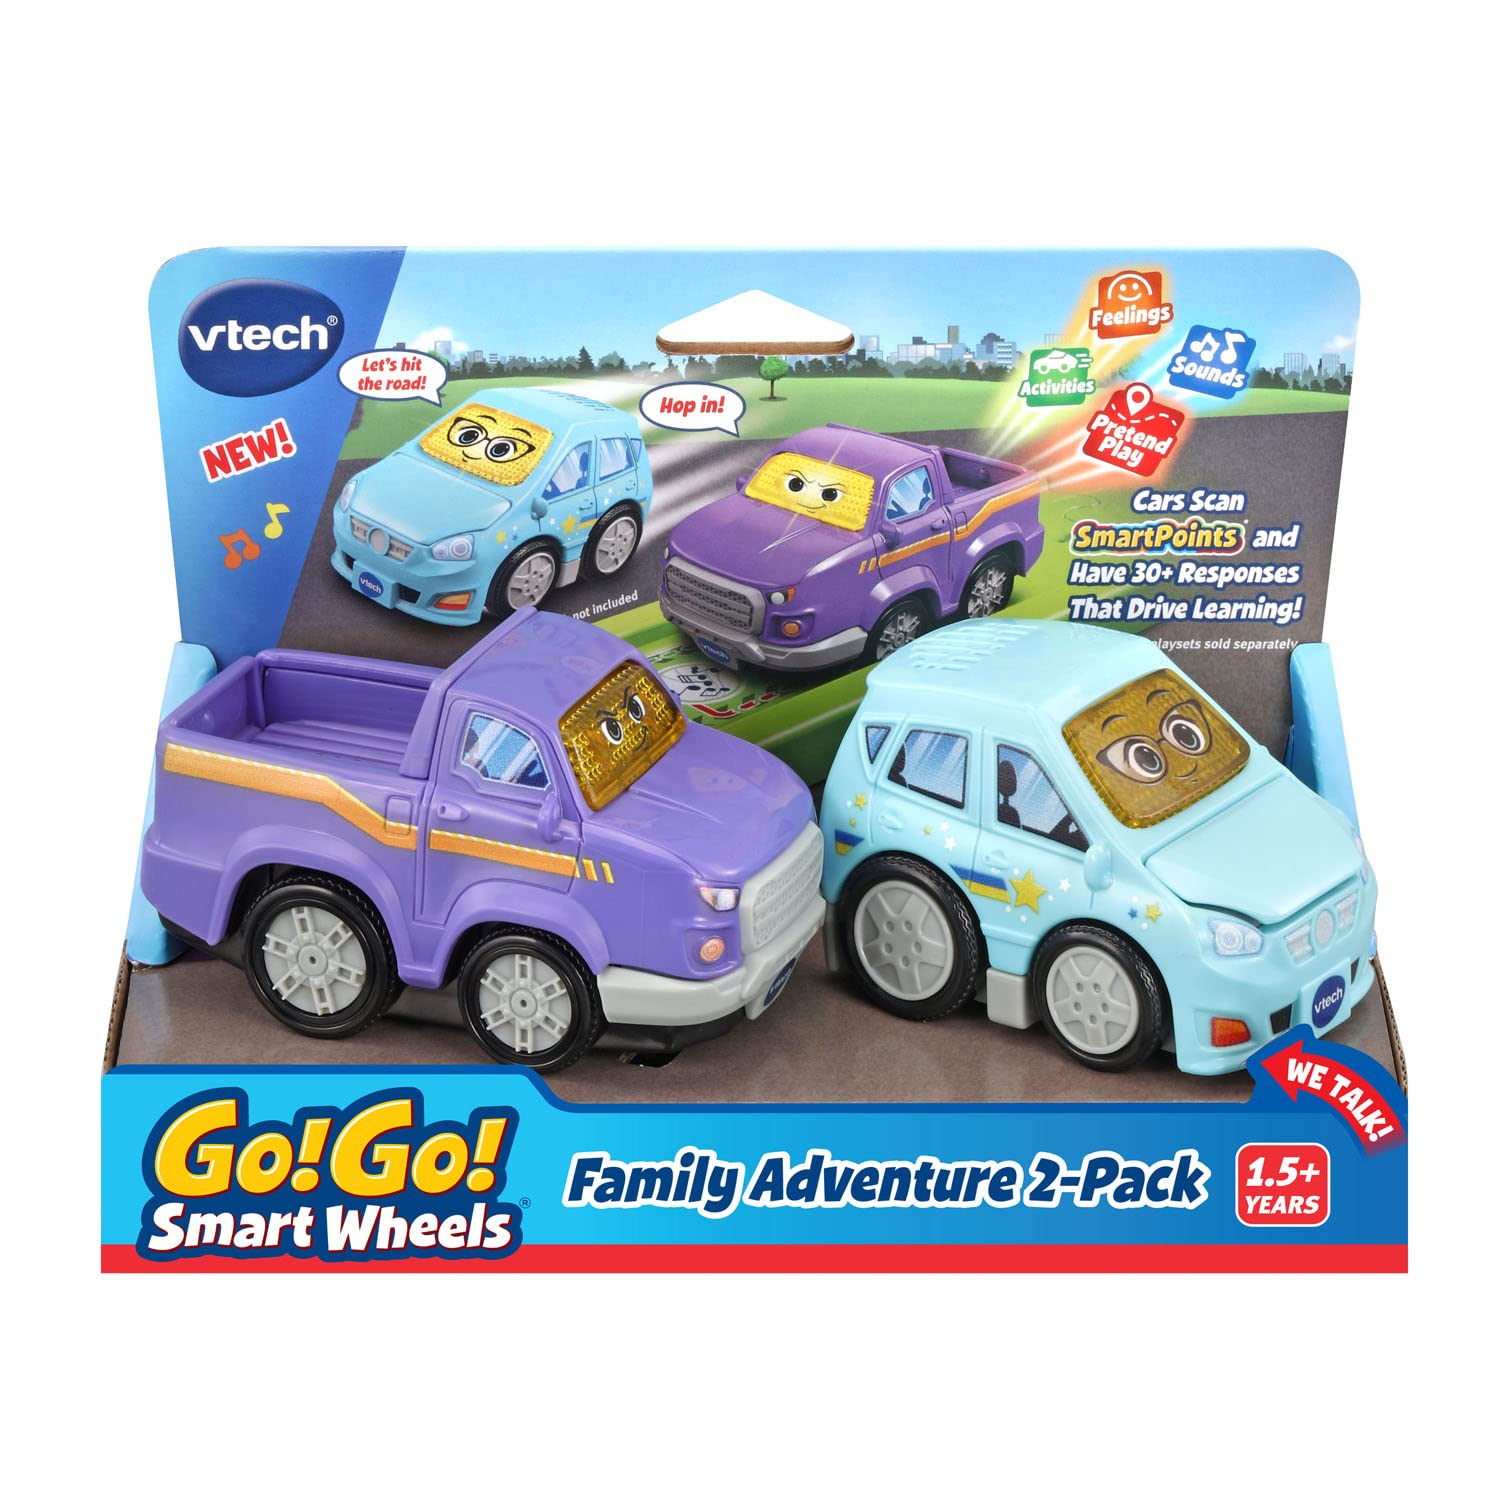 VTech Go! Go! Smart Wheels Family Adventure 2-Pack